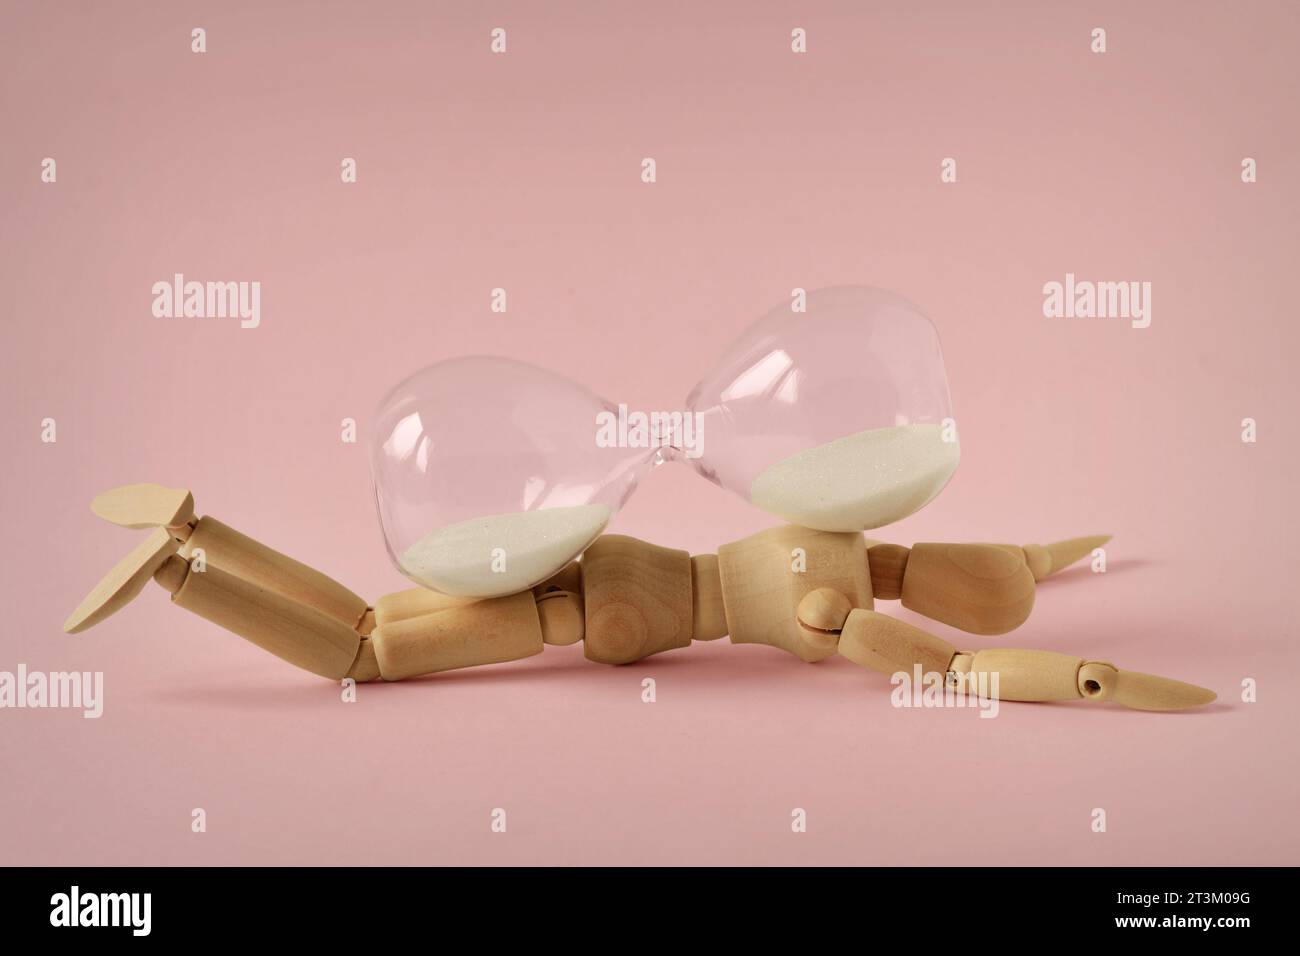 Hölzerne Schaufensterpuppe unter Sanduhr auf rosafarbenem Hintergrund - Konzept der Stoppzeit, Gesundheit und Alterung Stockfoto